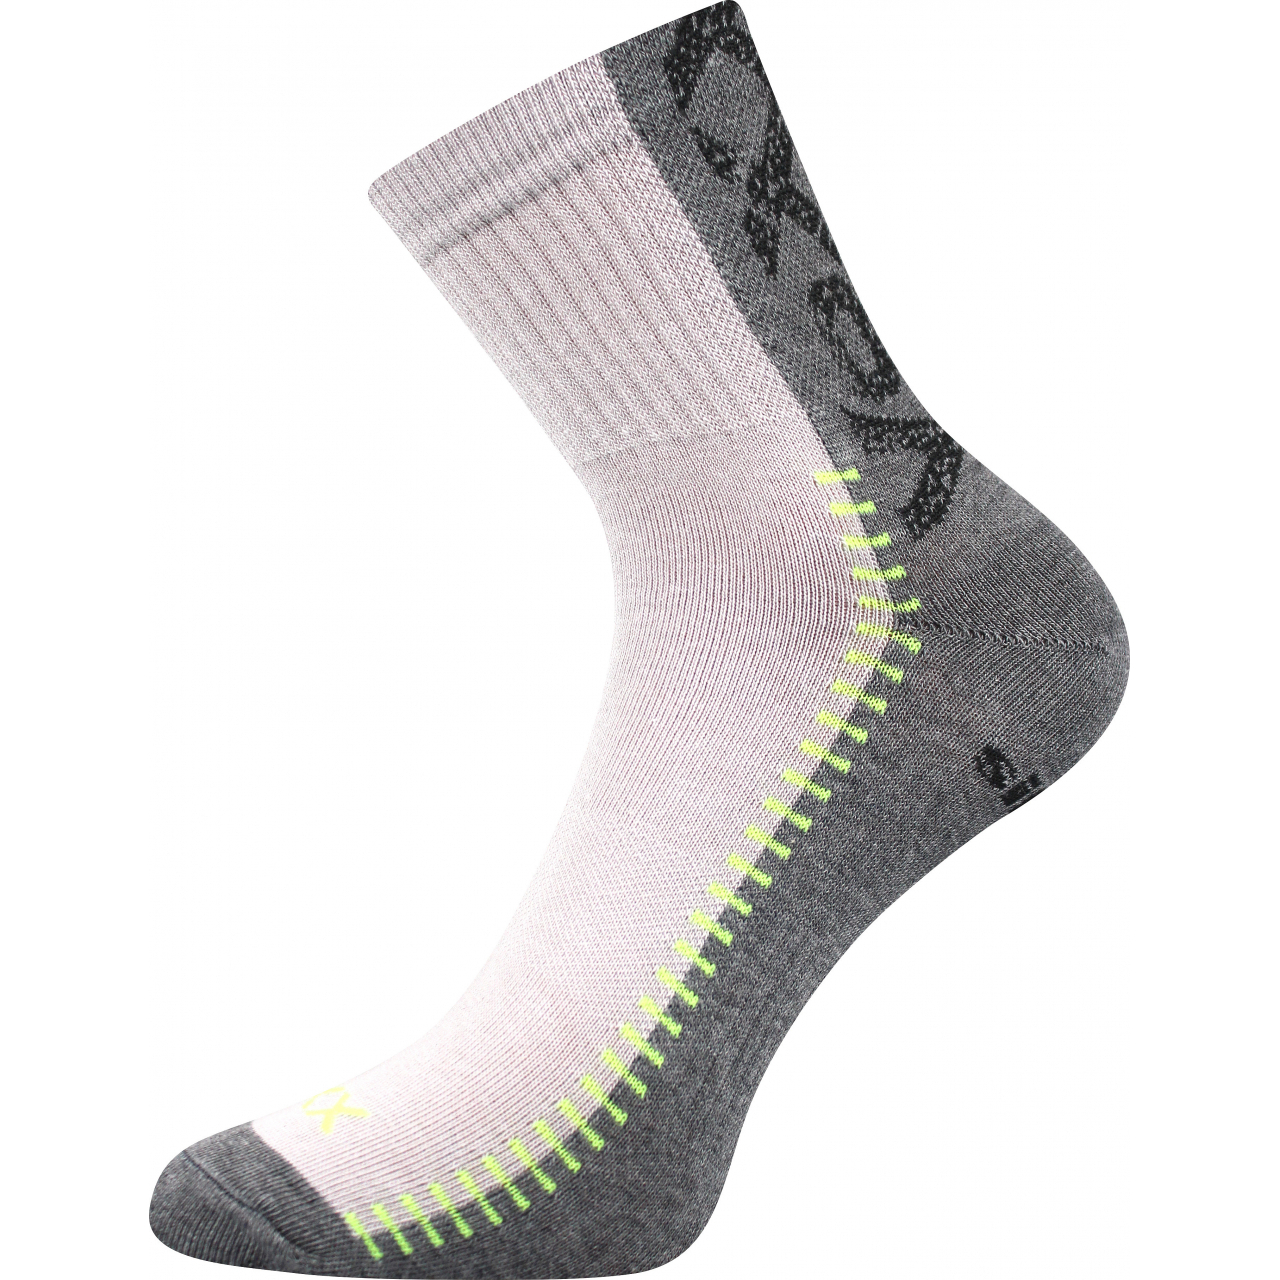 Ponožky sportovní Voxx Revolt - světle šedé-šedé, 43-46